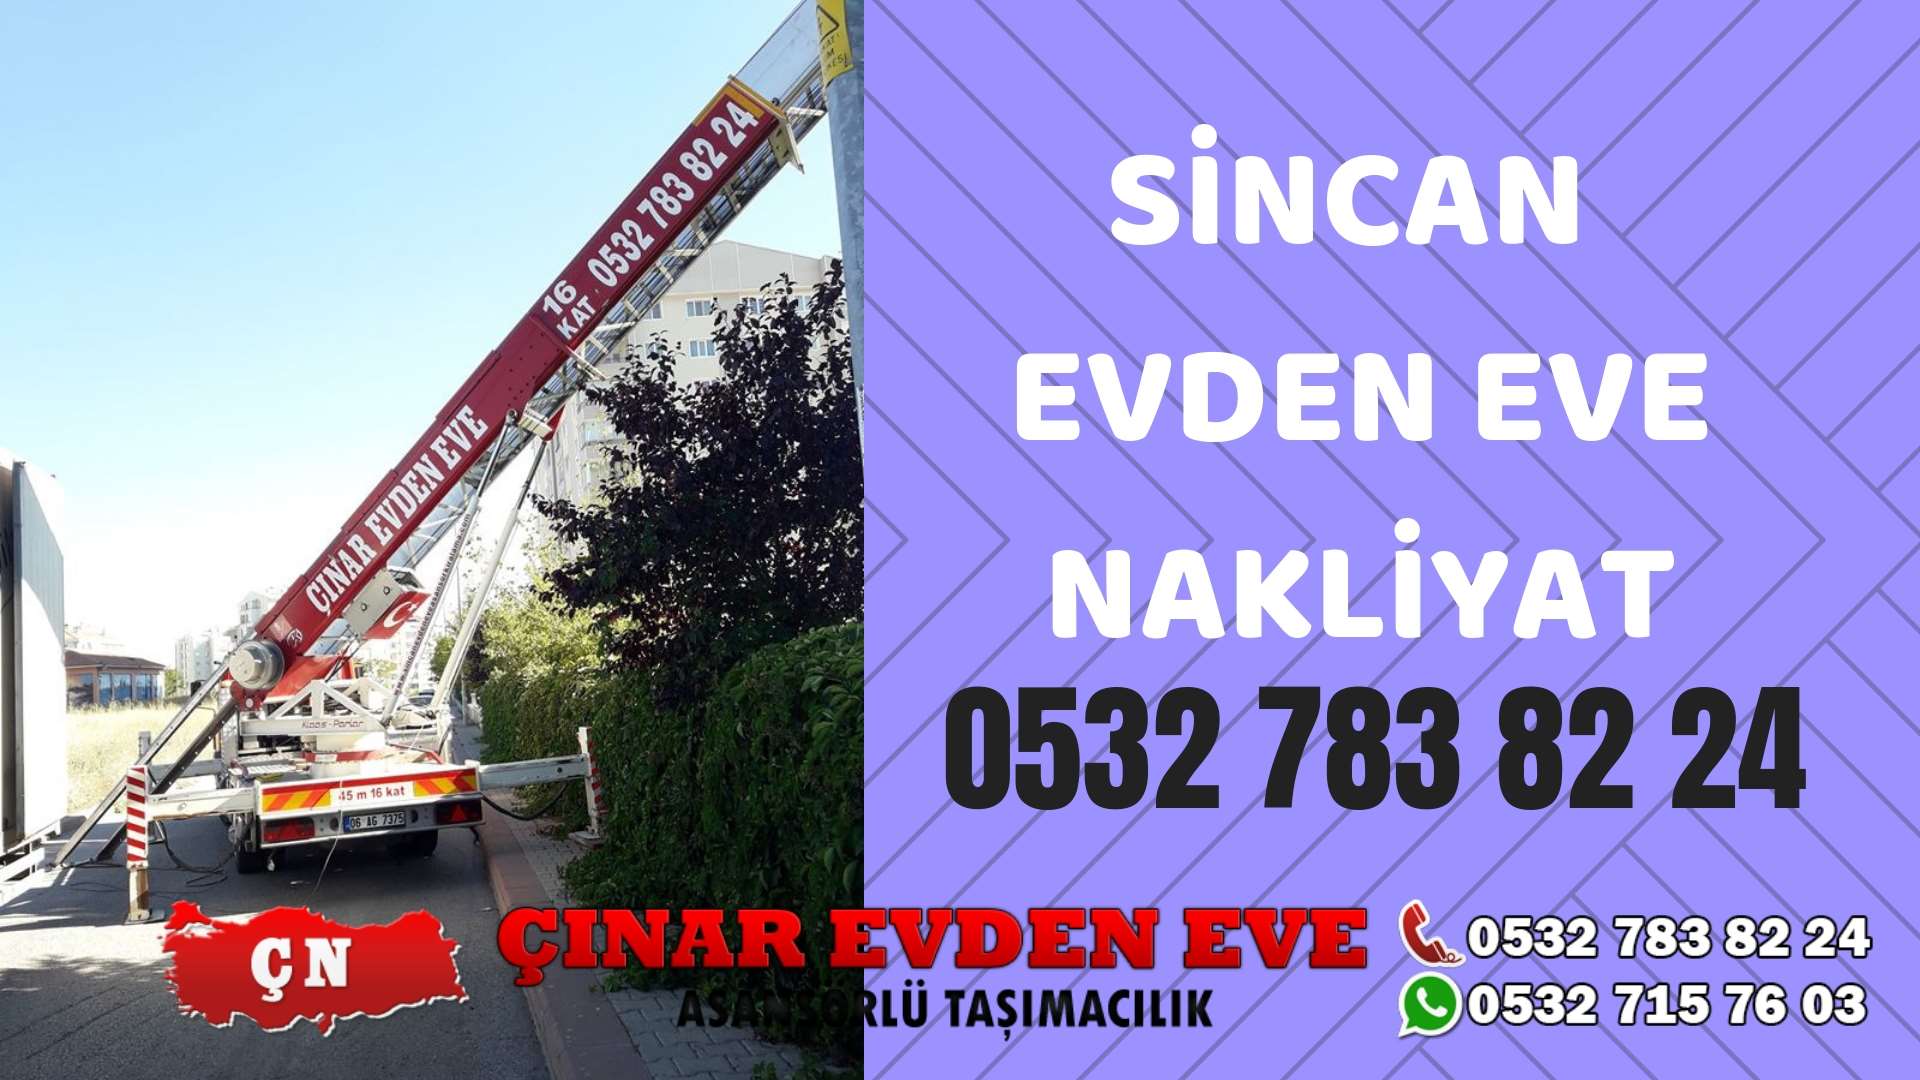 Ankara Polatlı Sincan evden eve asansörlü nakliyat en ucuz nakliye 0532 715 76 03